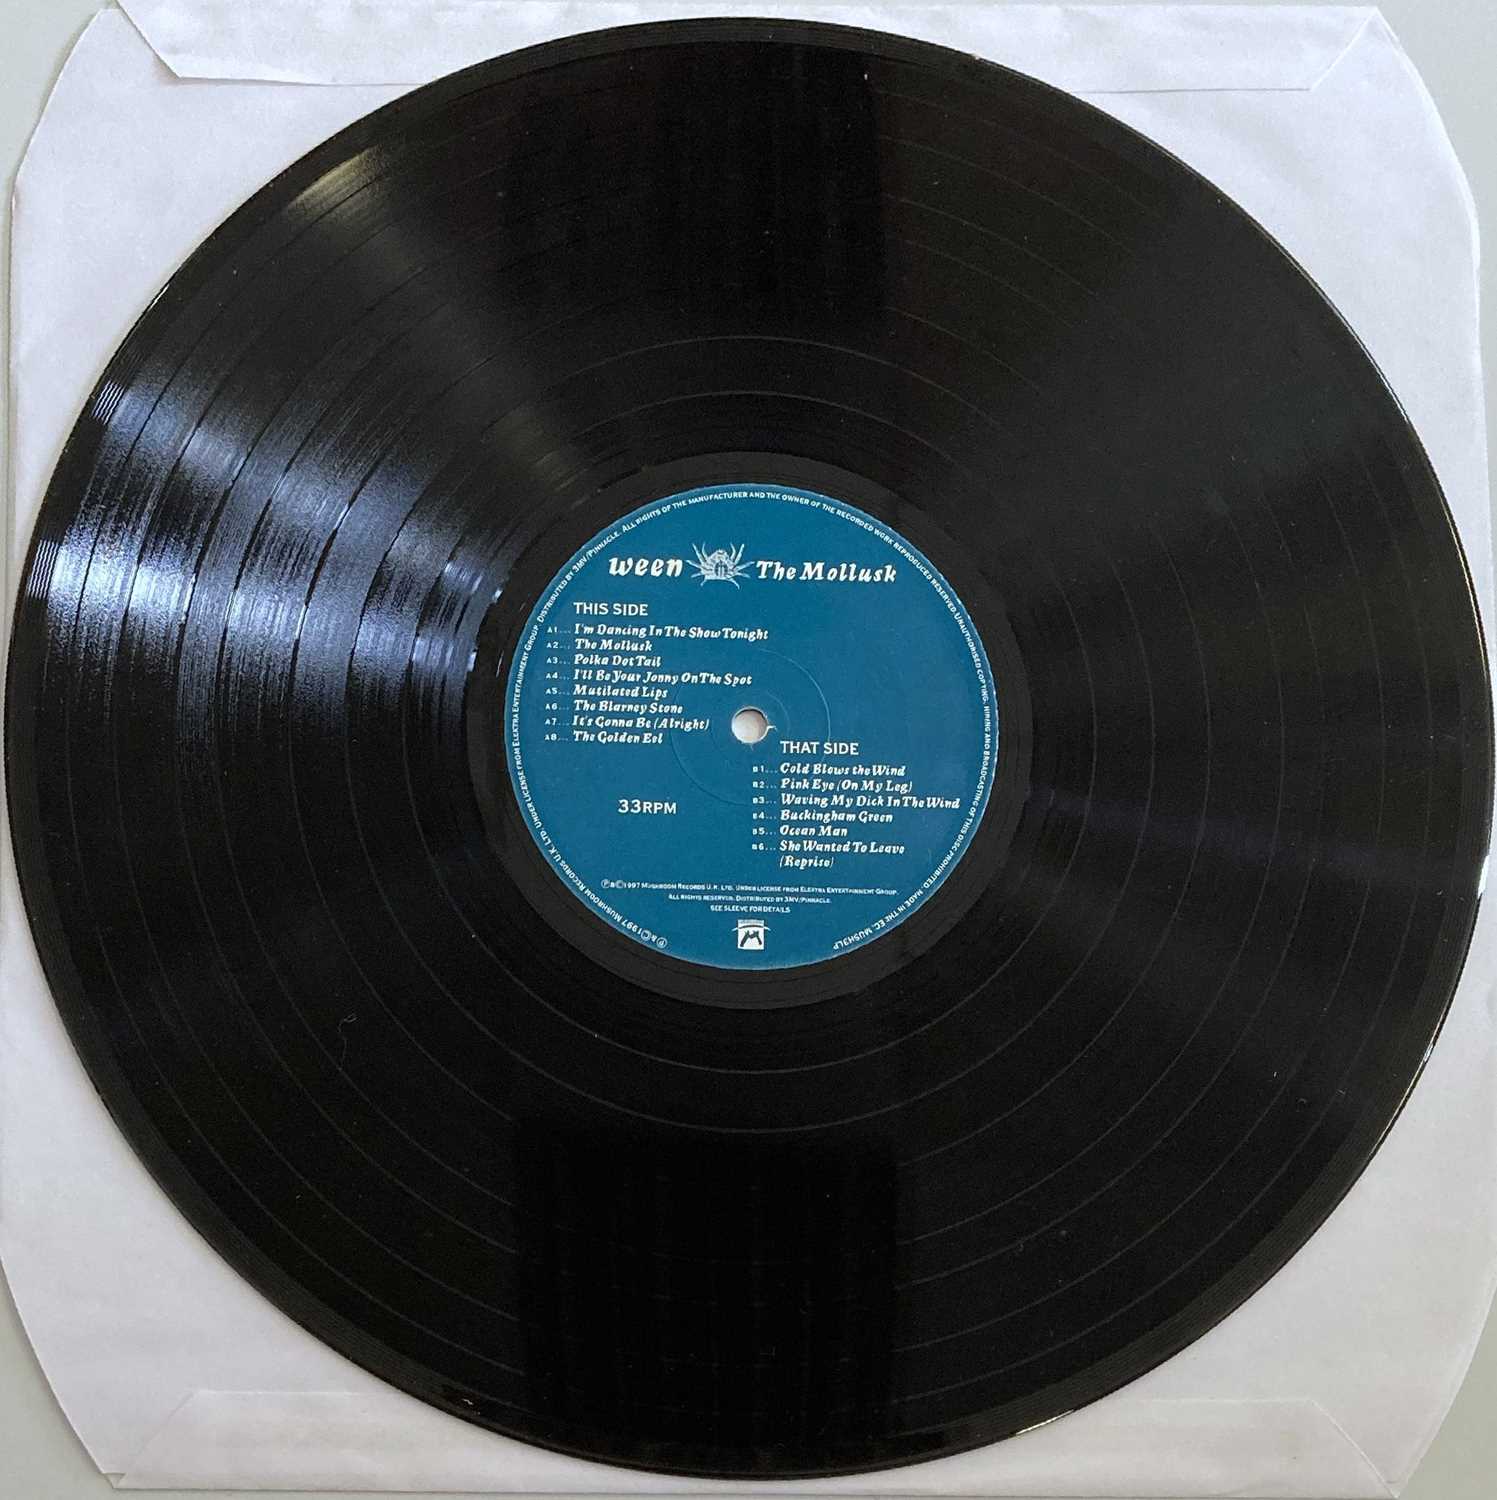 WEEN - THE MOLLUSK LP (ORIGINAL UK PRESSING - MUSHROOM MUSH3LP) - Image 3 of 3